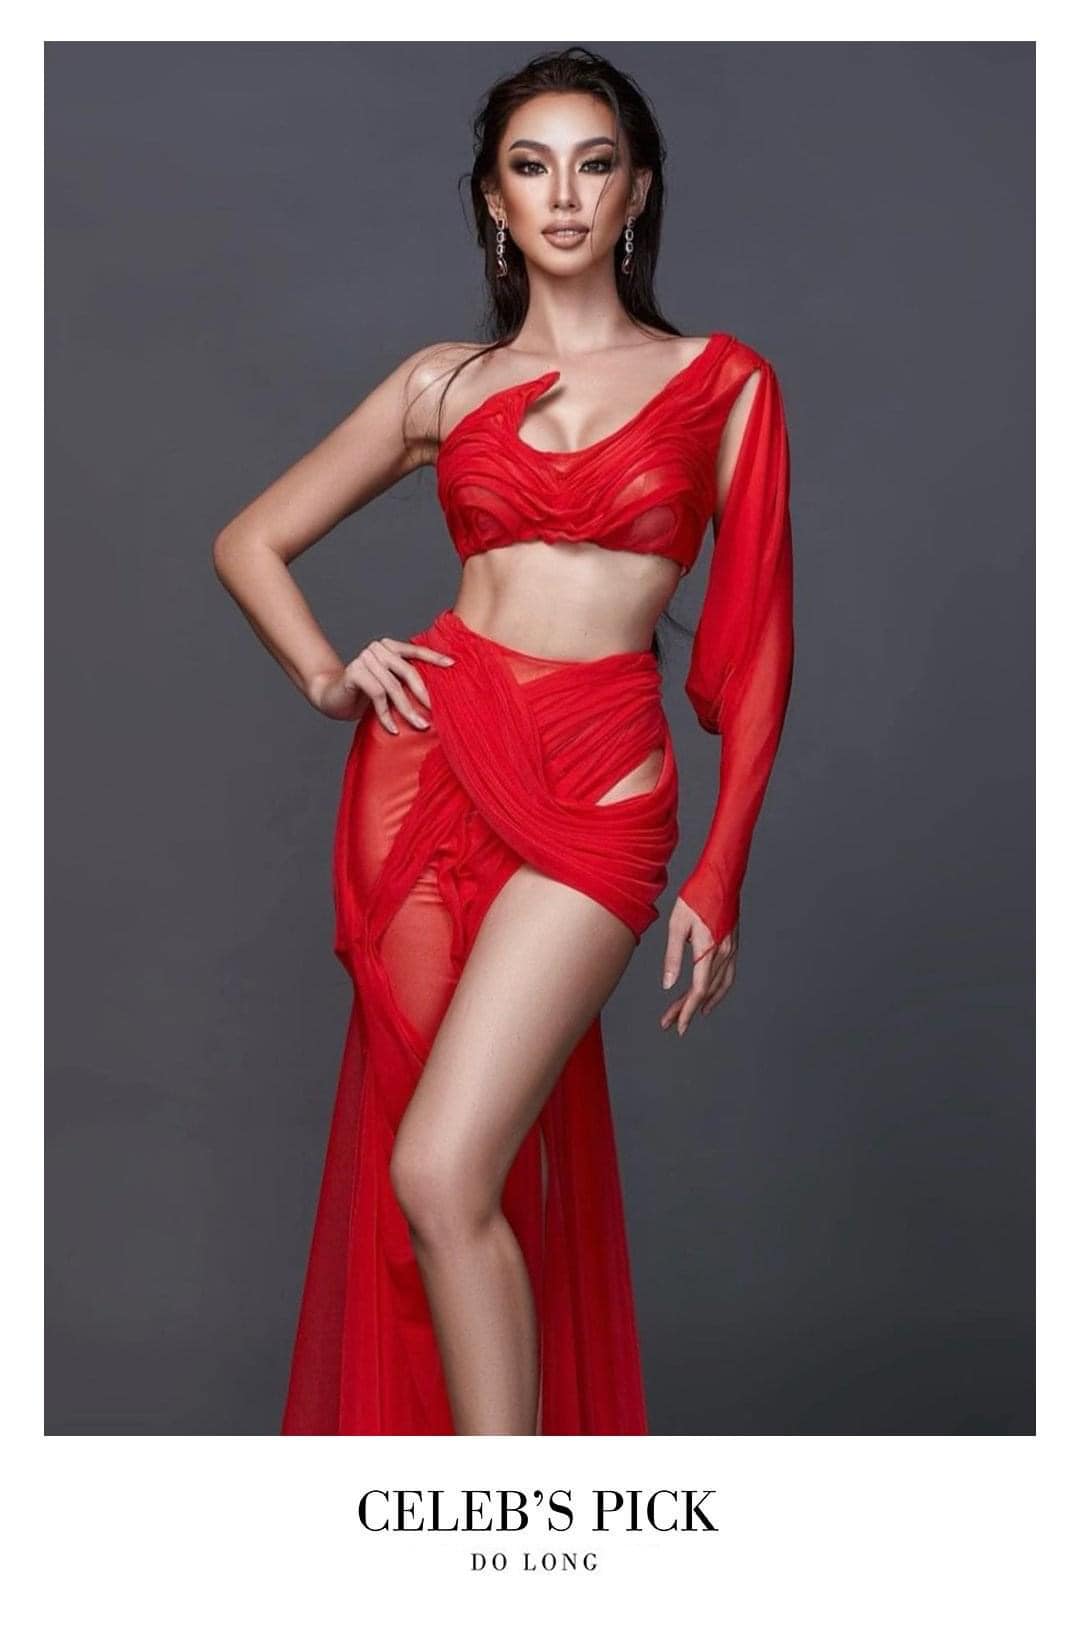 Hoa hậu Thùy Tiên quyến rũ trong thiết kế cắt xẻ gợi cảm - Ảnh 4.